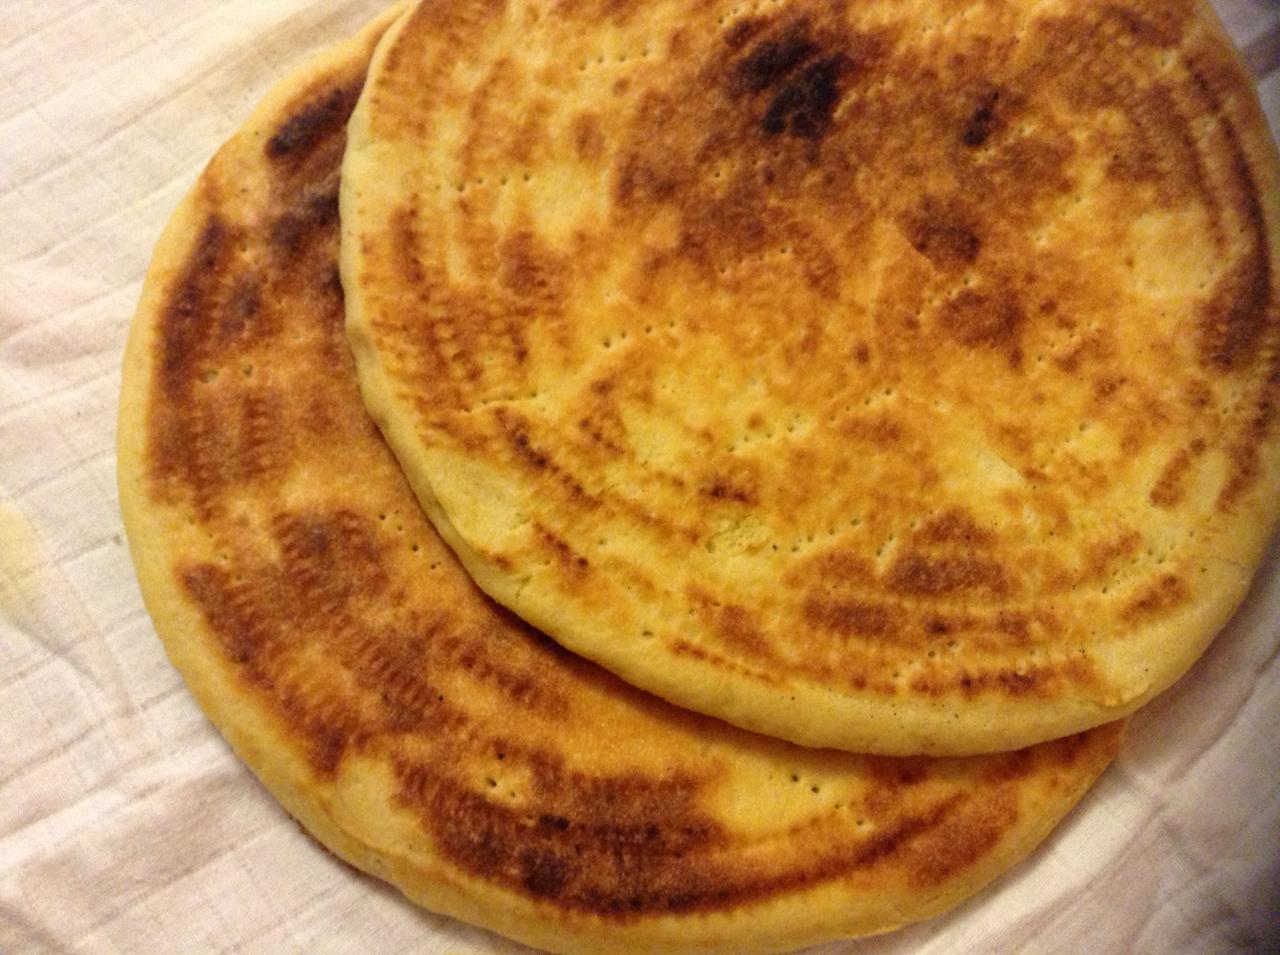 اطباق تقليدية جزائرية , خبز الطاجين الجزائري اكلة تقليدية قديمة بمهارات